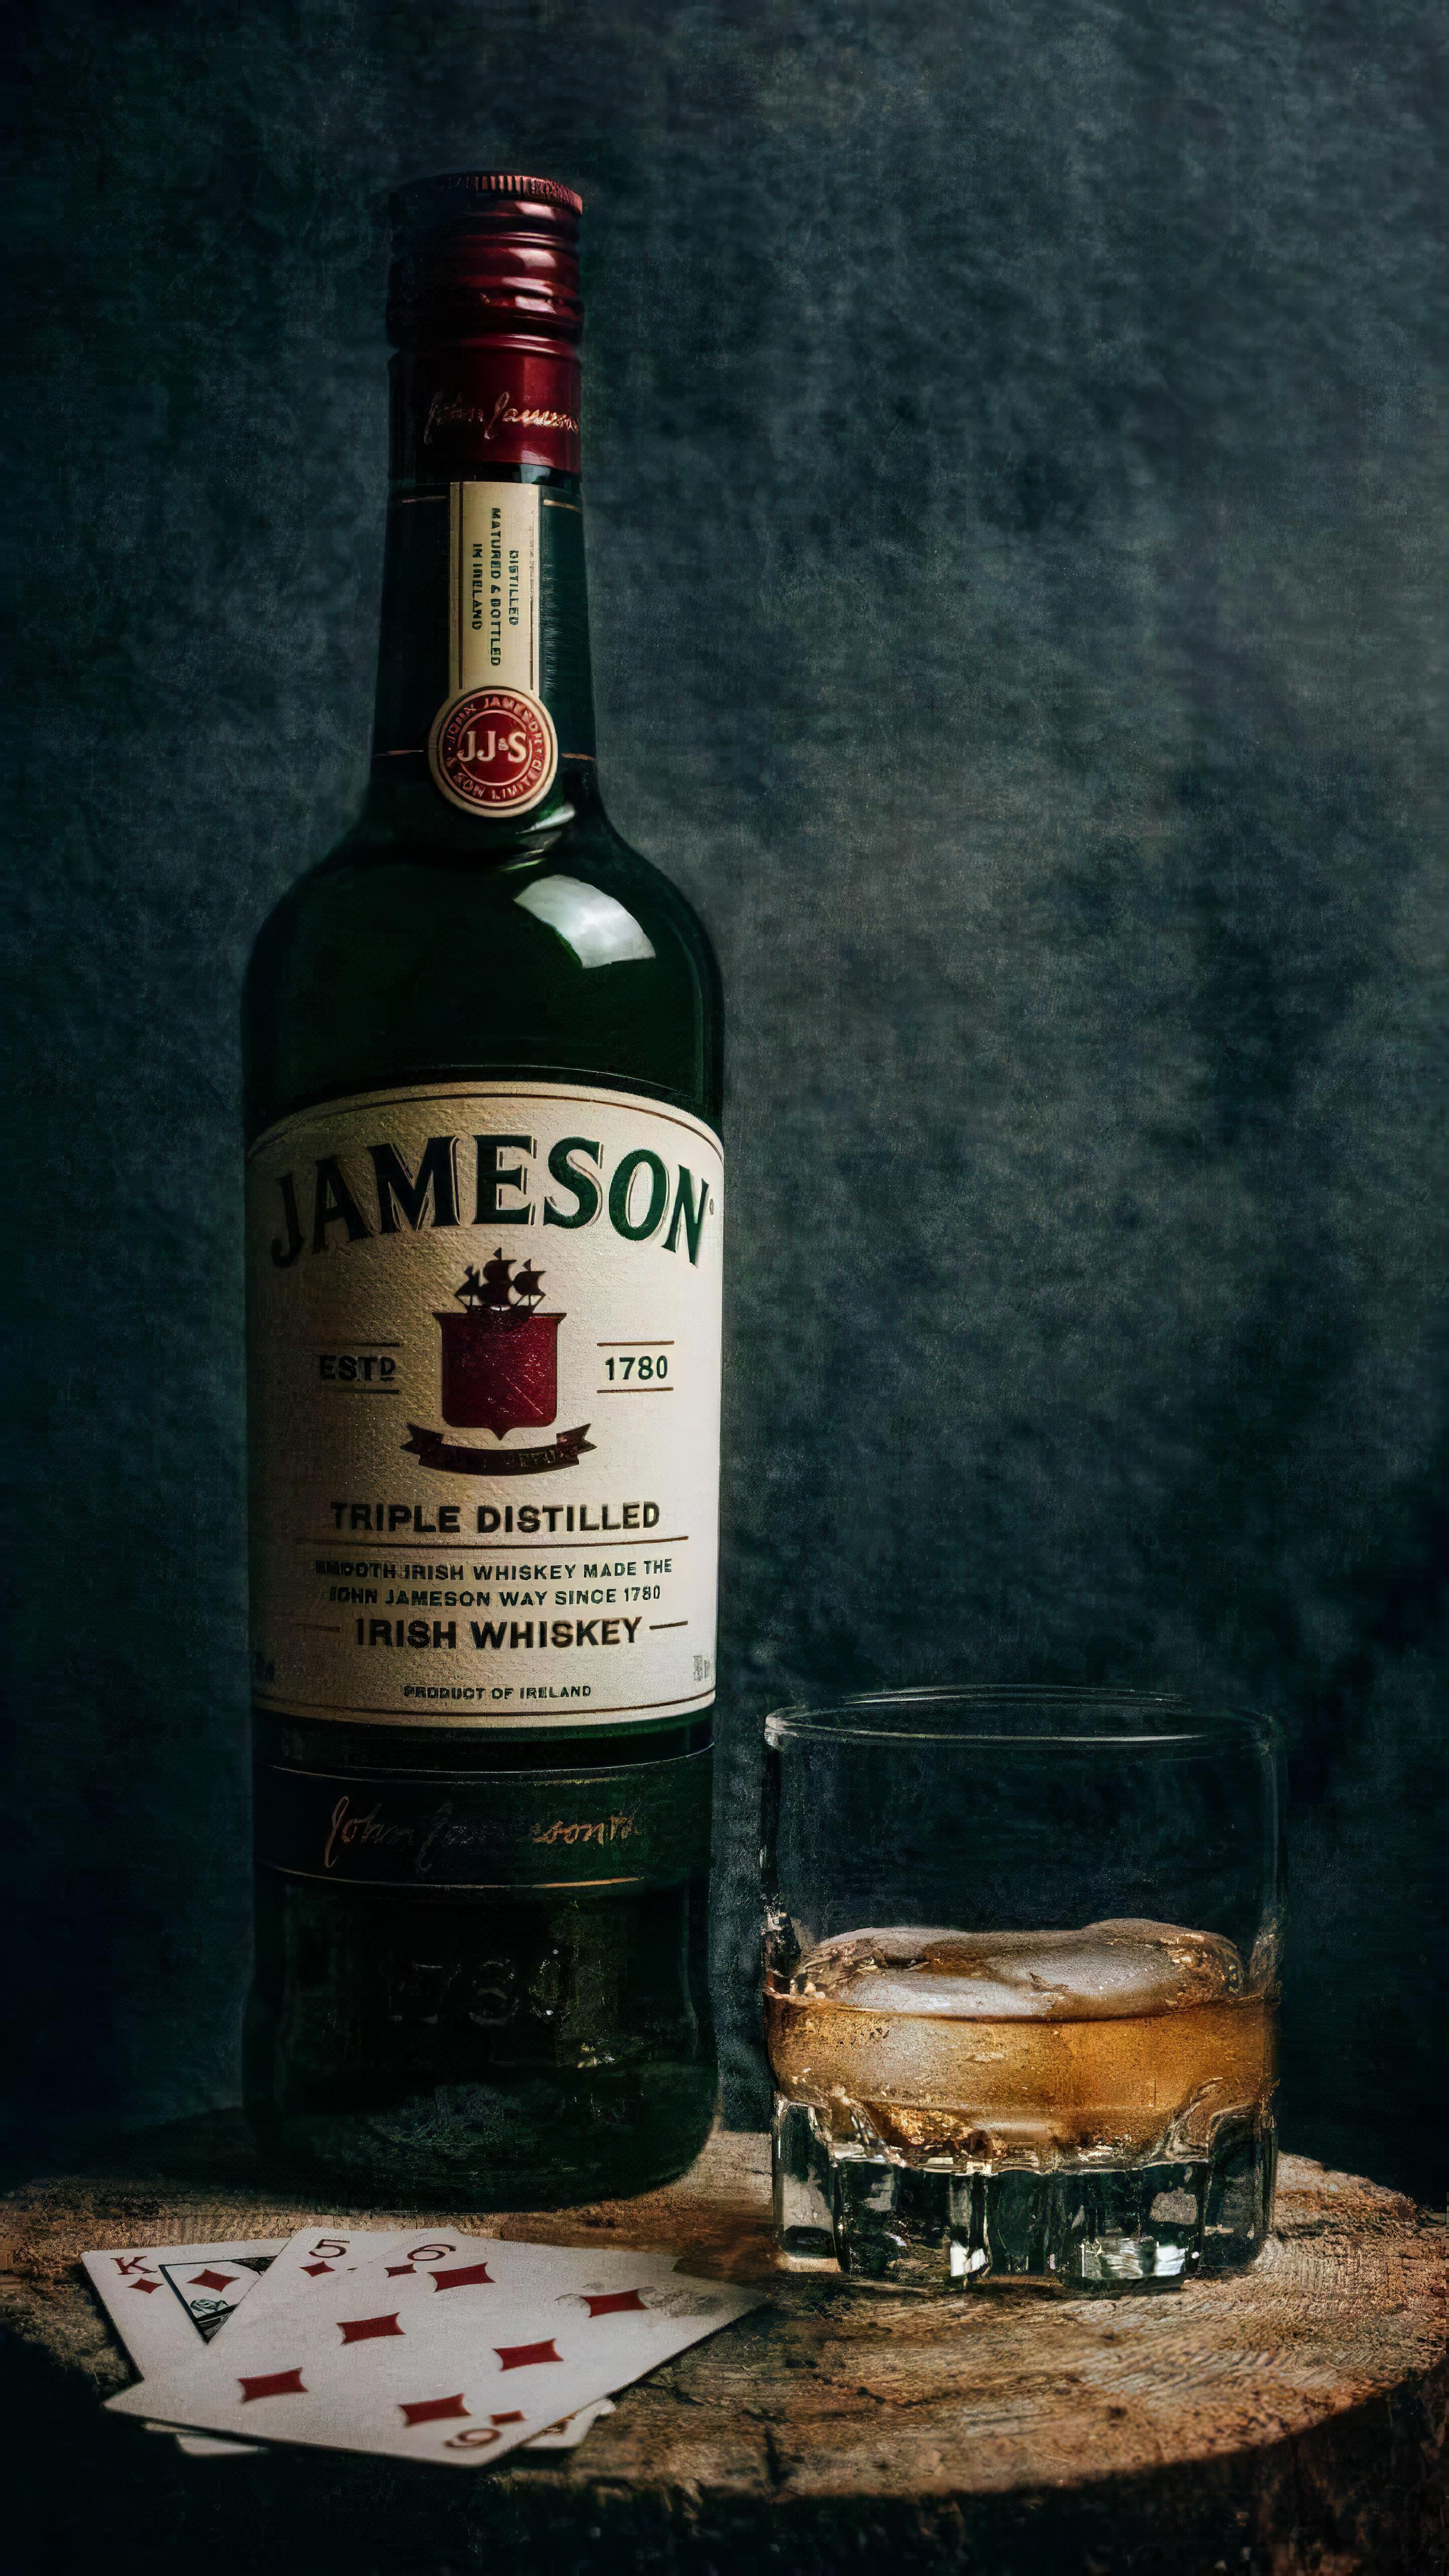 jameson irish whiskey